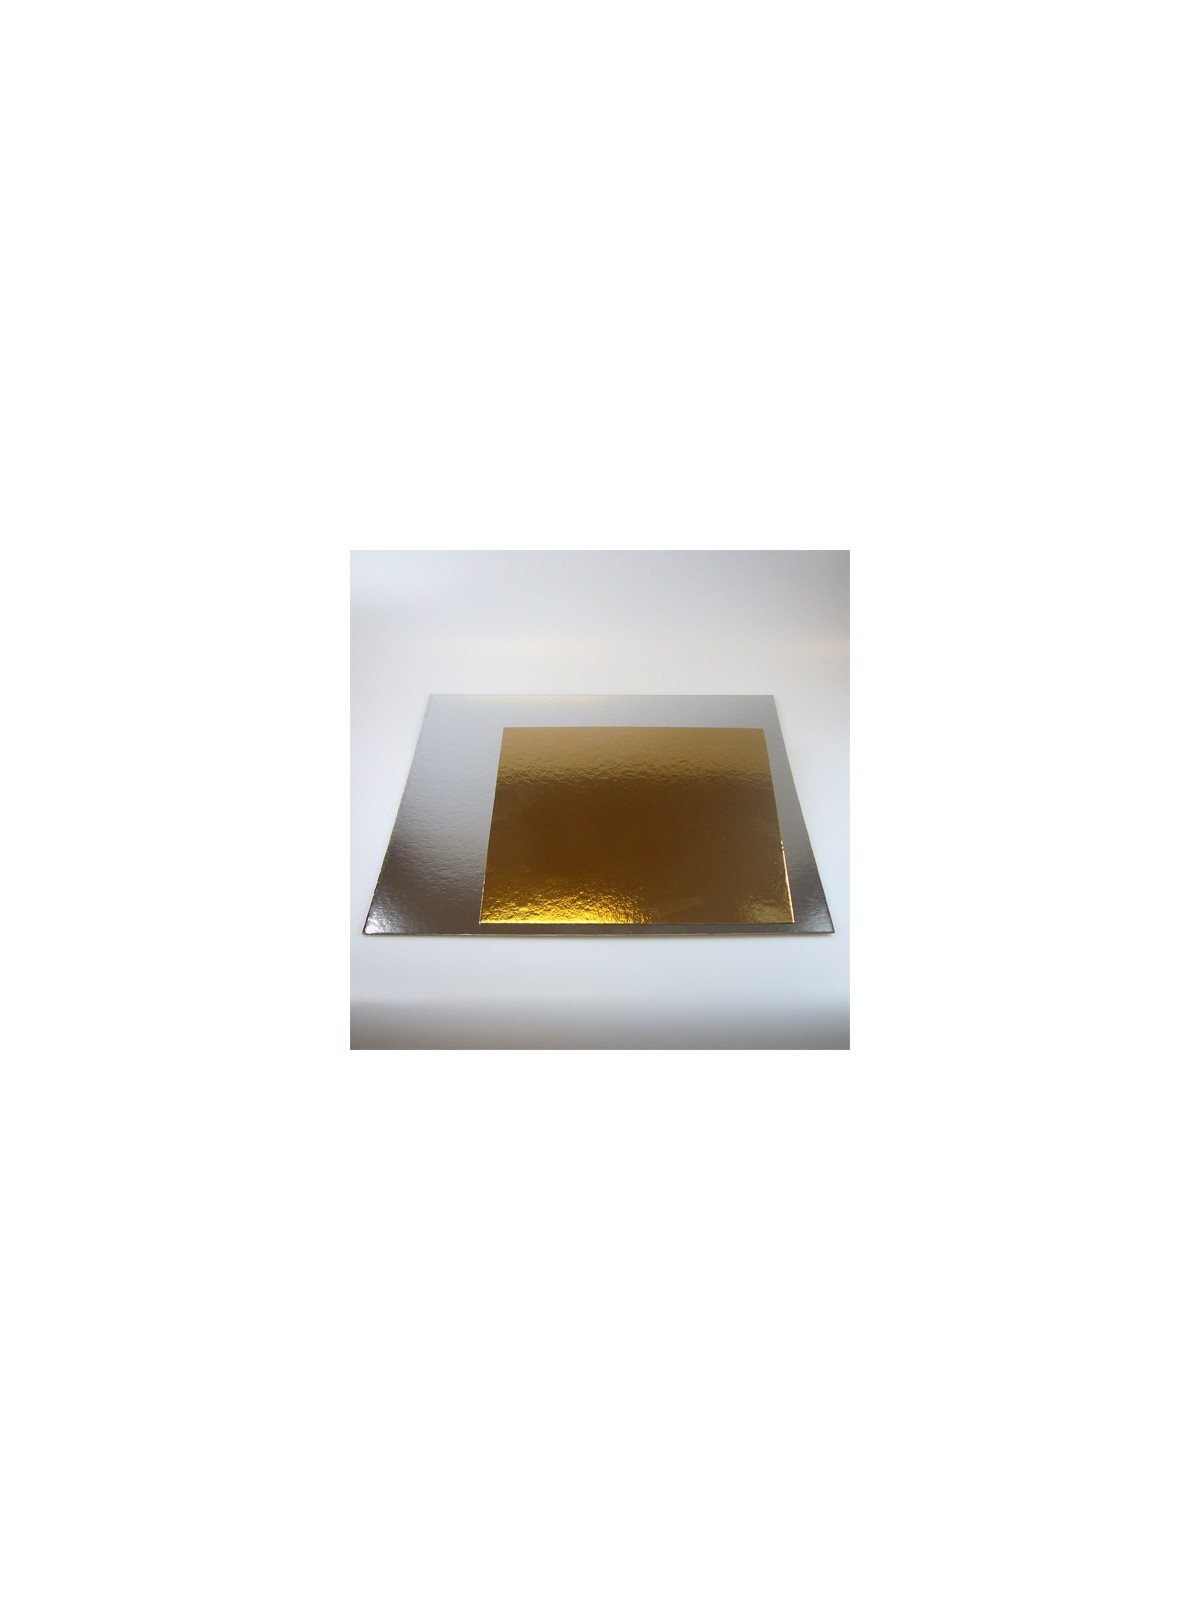 Čtvercová podložka pod dort zlatá / stříbrná 30cm - 100ks